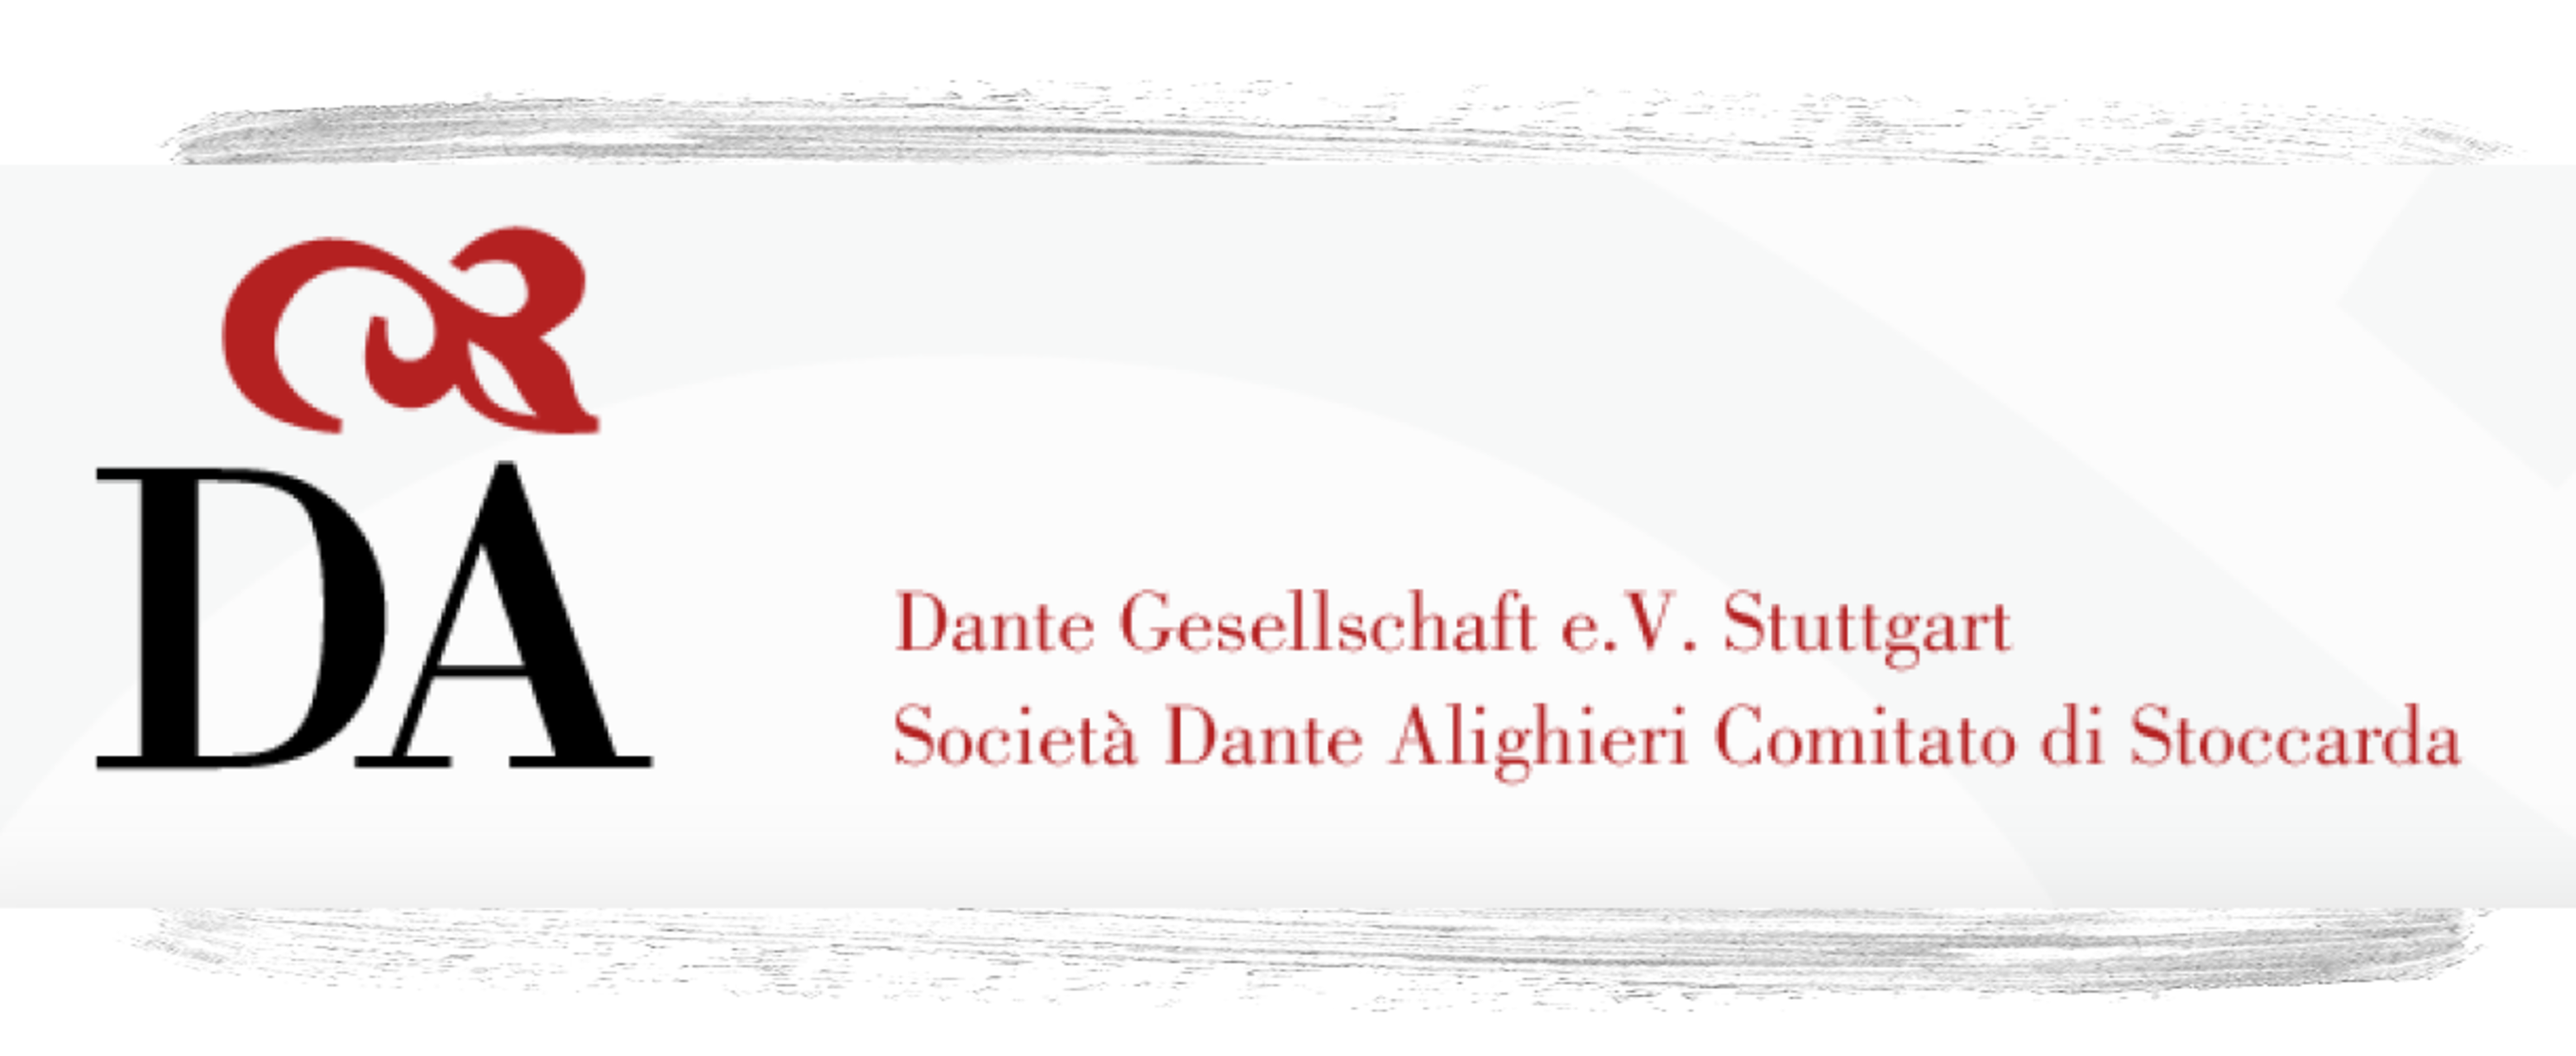 Stuttgarter Dante Gesellschaft